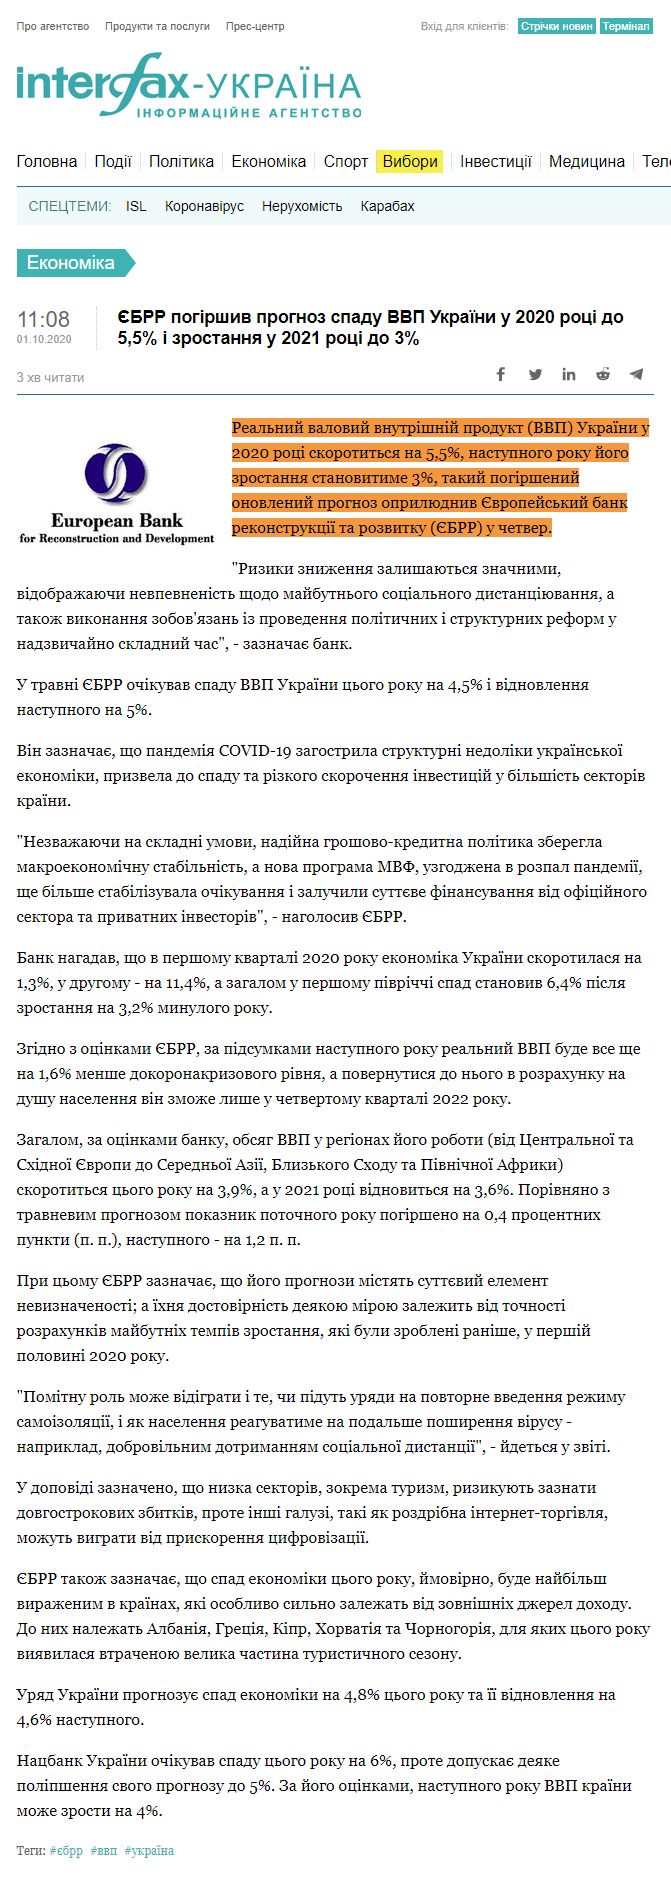 https://ua.interfax.com.ua/news/economic/692021.html